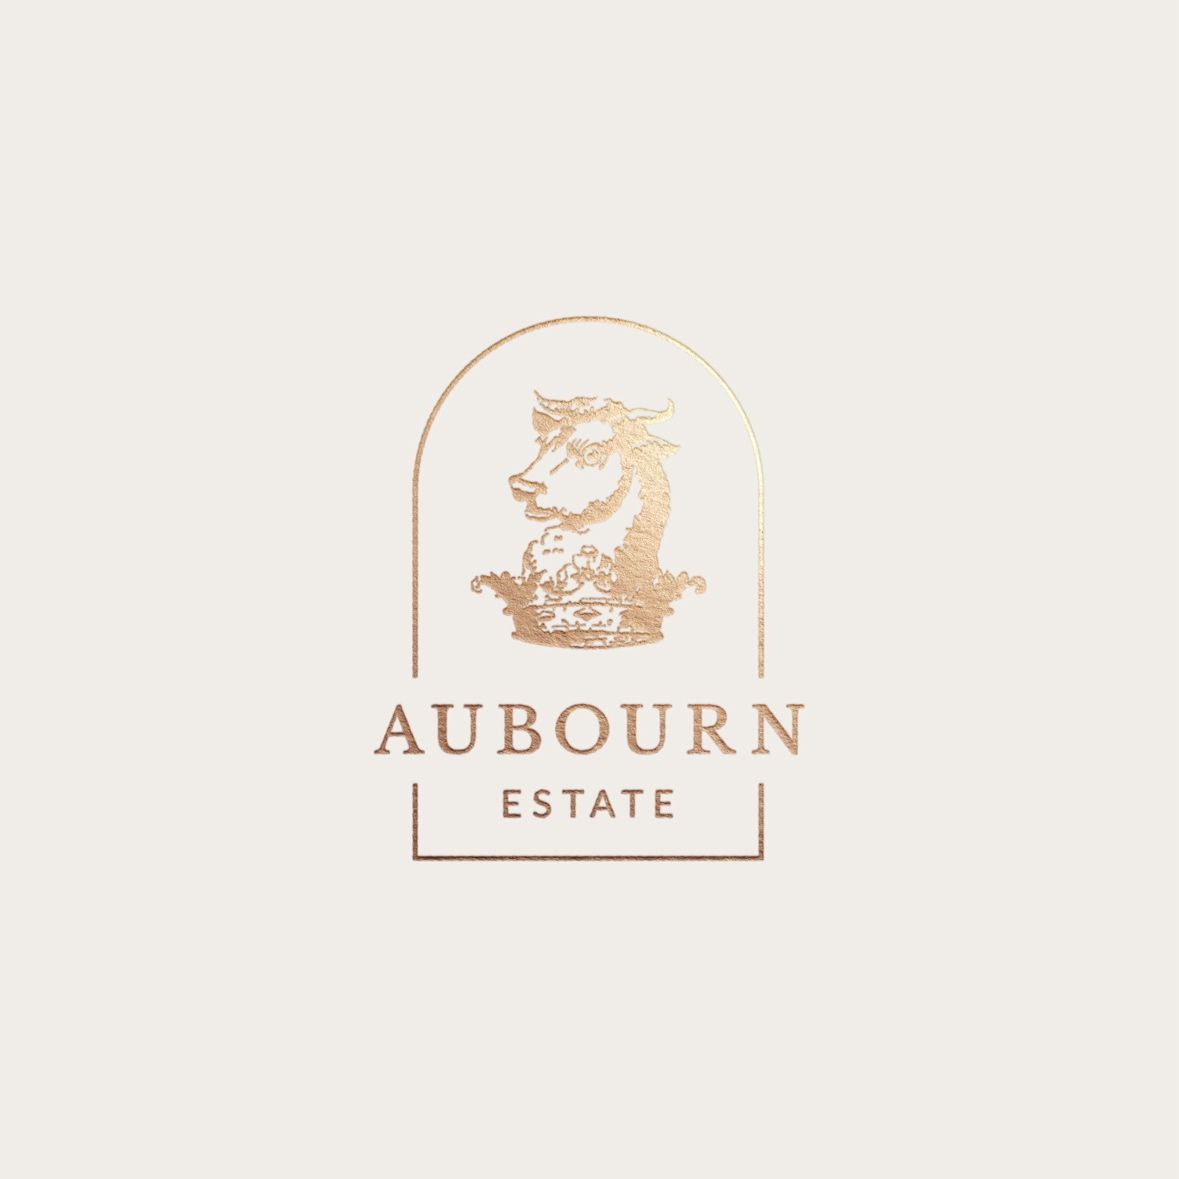 Aubourn Estate